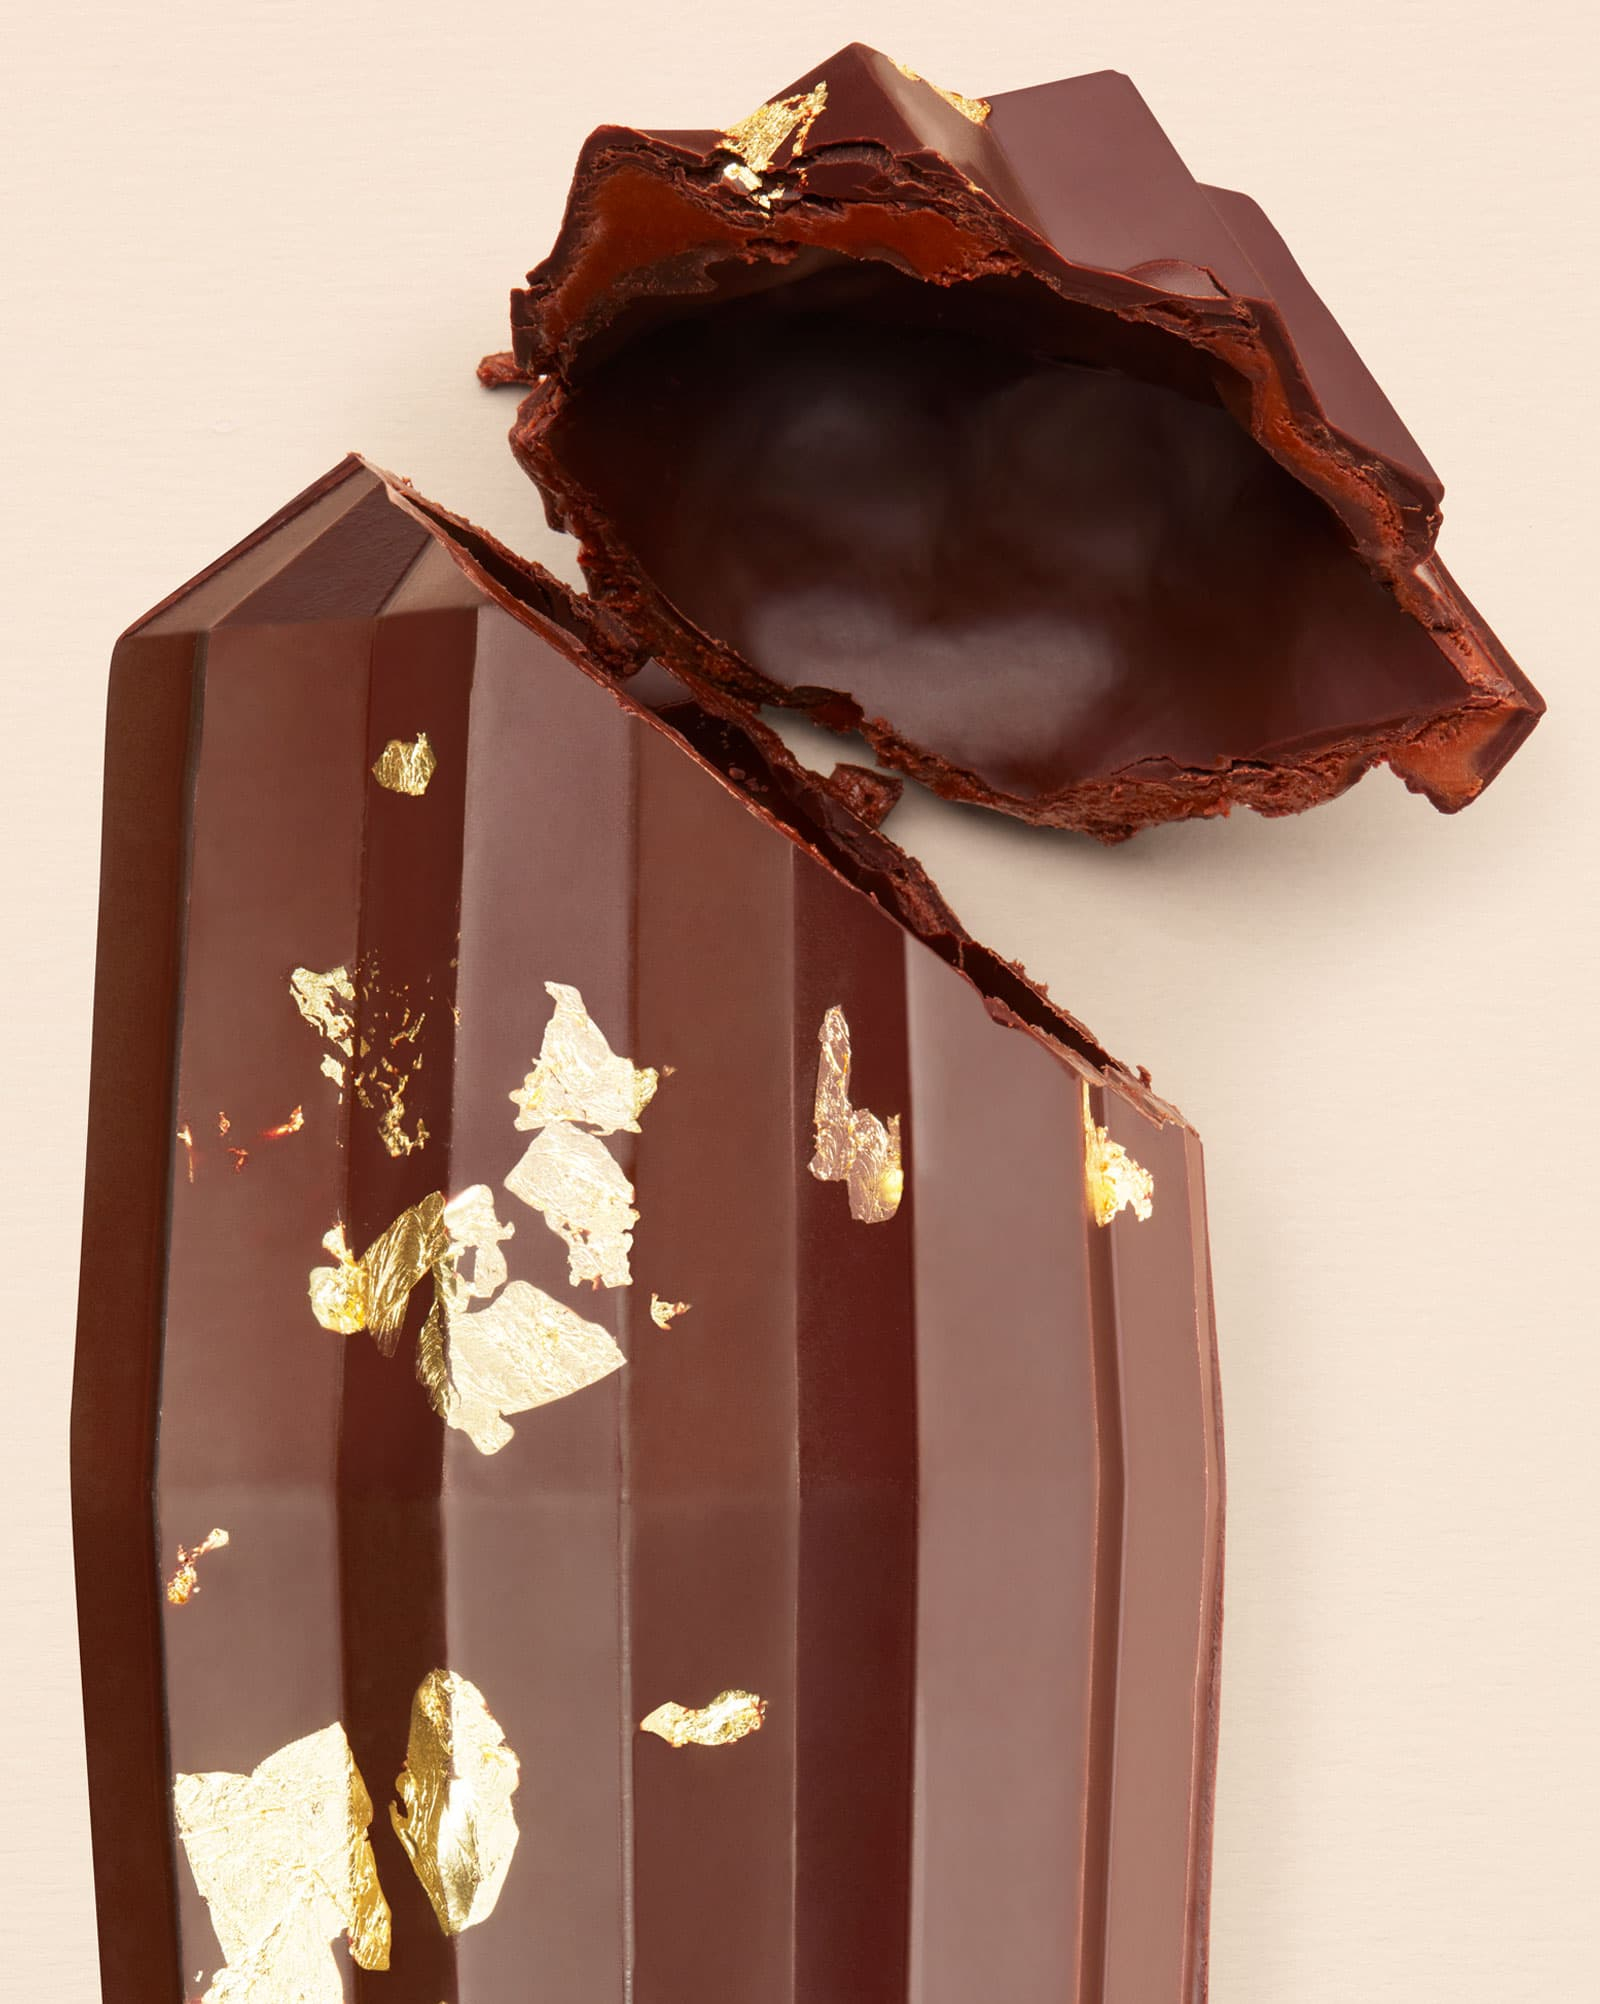 Praliné Cocoa Pod